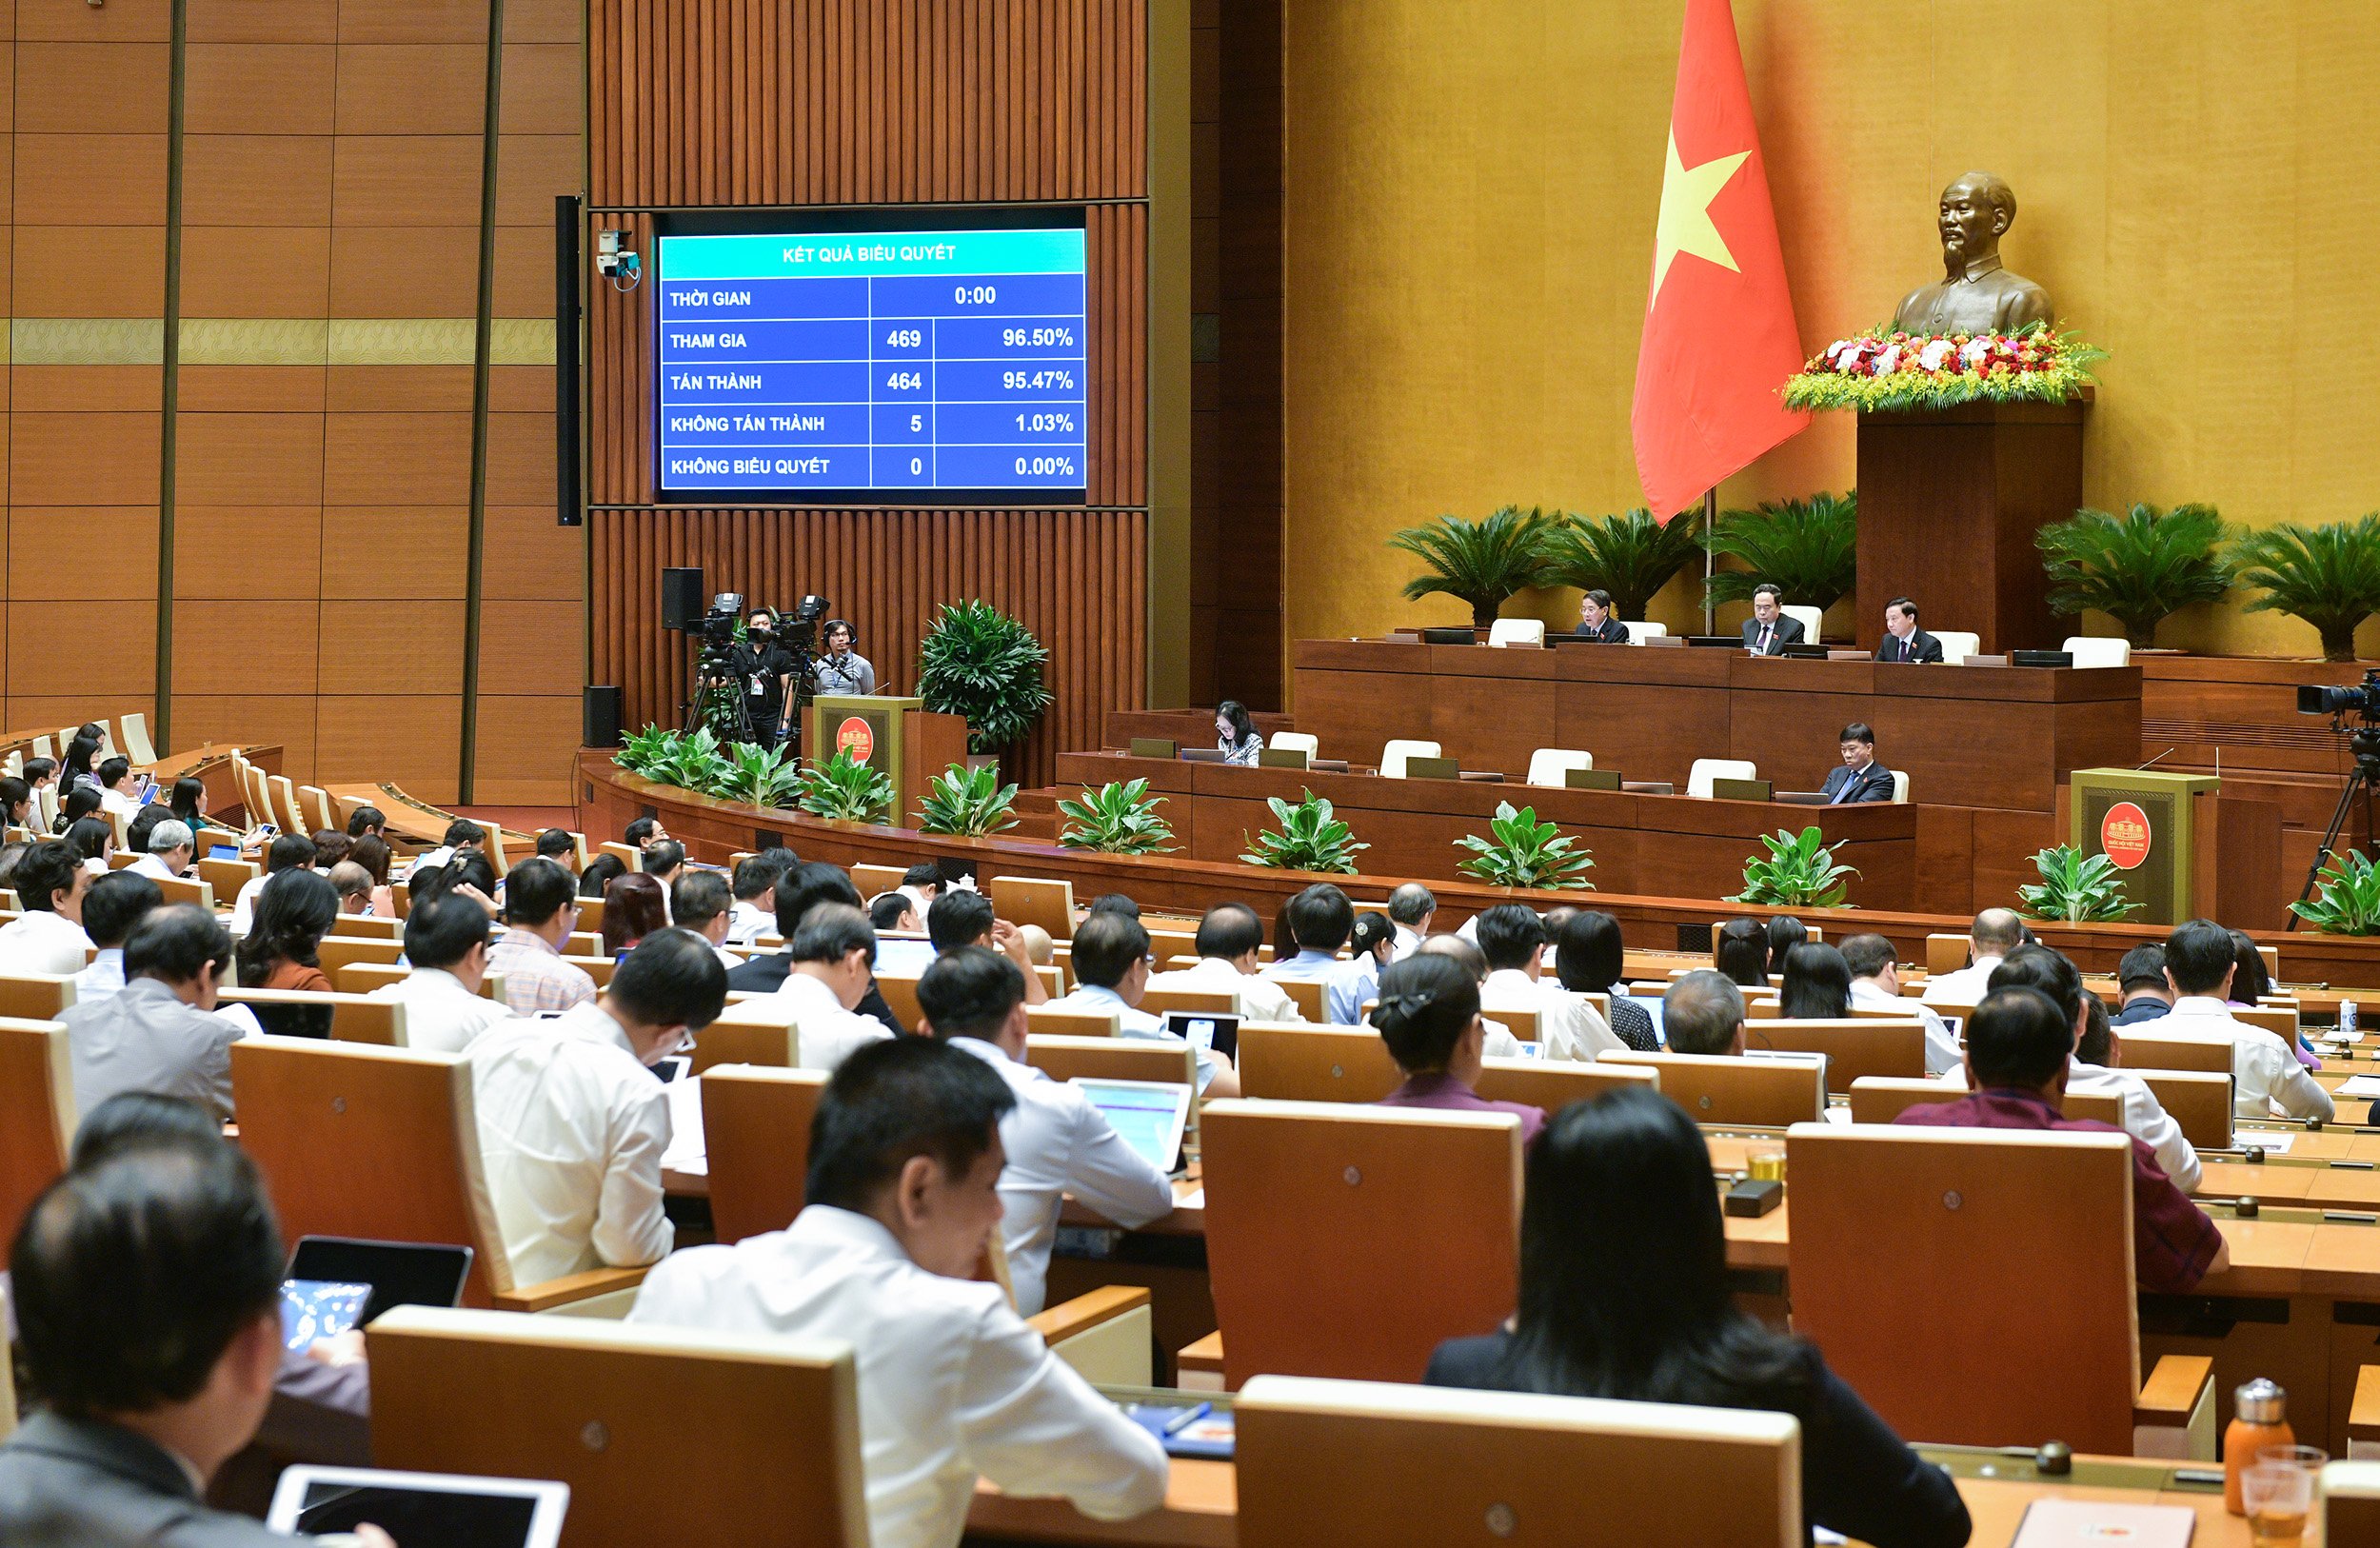 Chủ tịch UBND các cấp của Hà Nội có quyền yêu cầu cắt điện, nước công trình vi phạm - Ảnh 3.